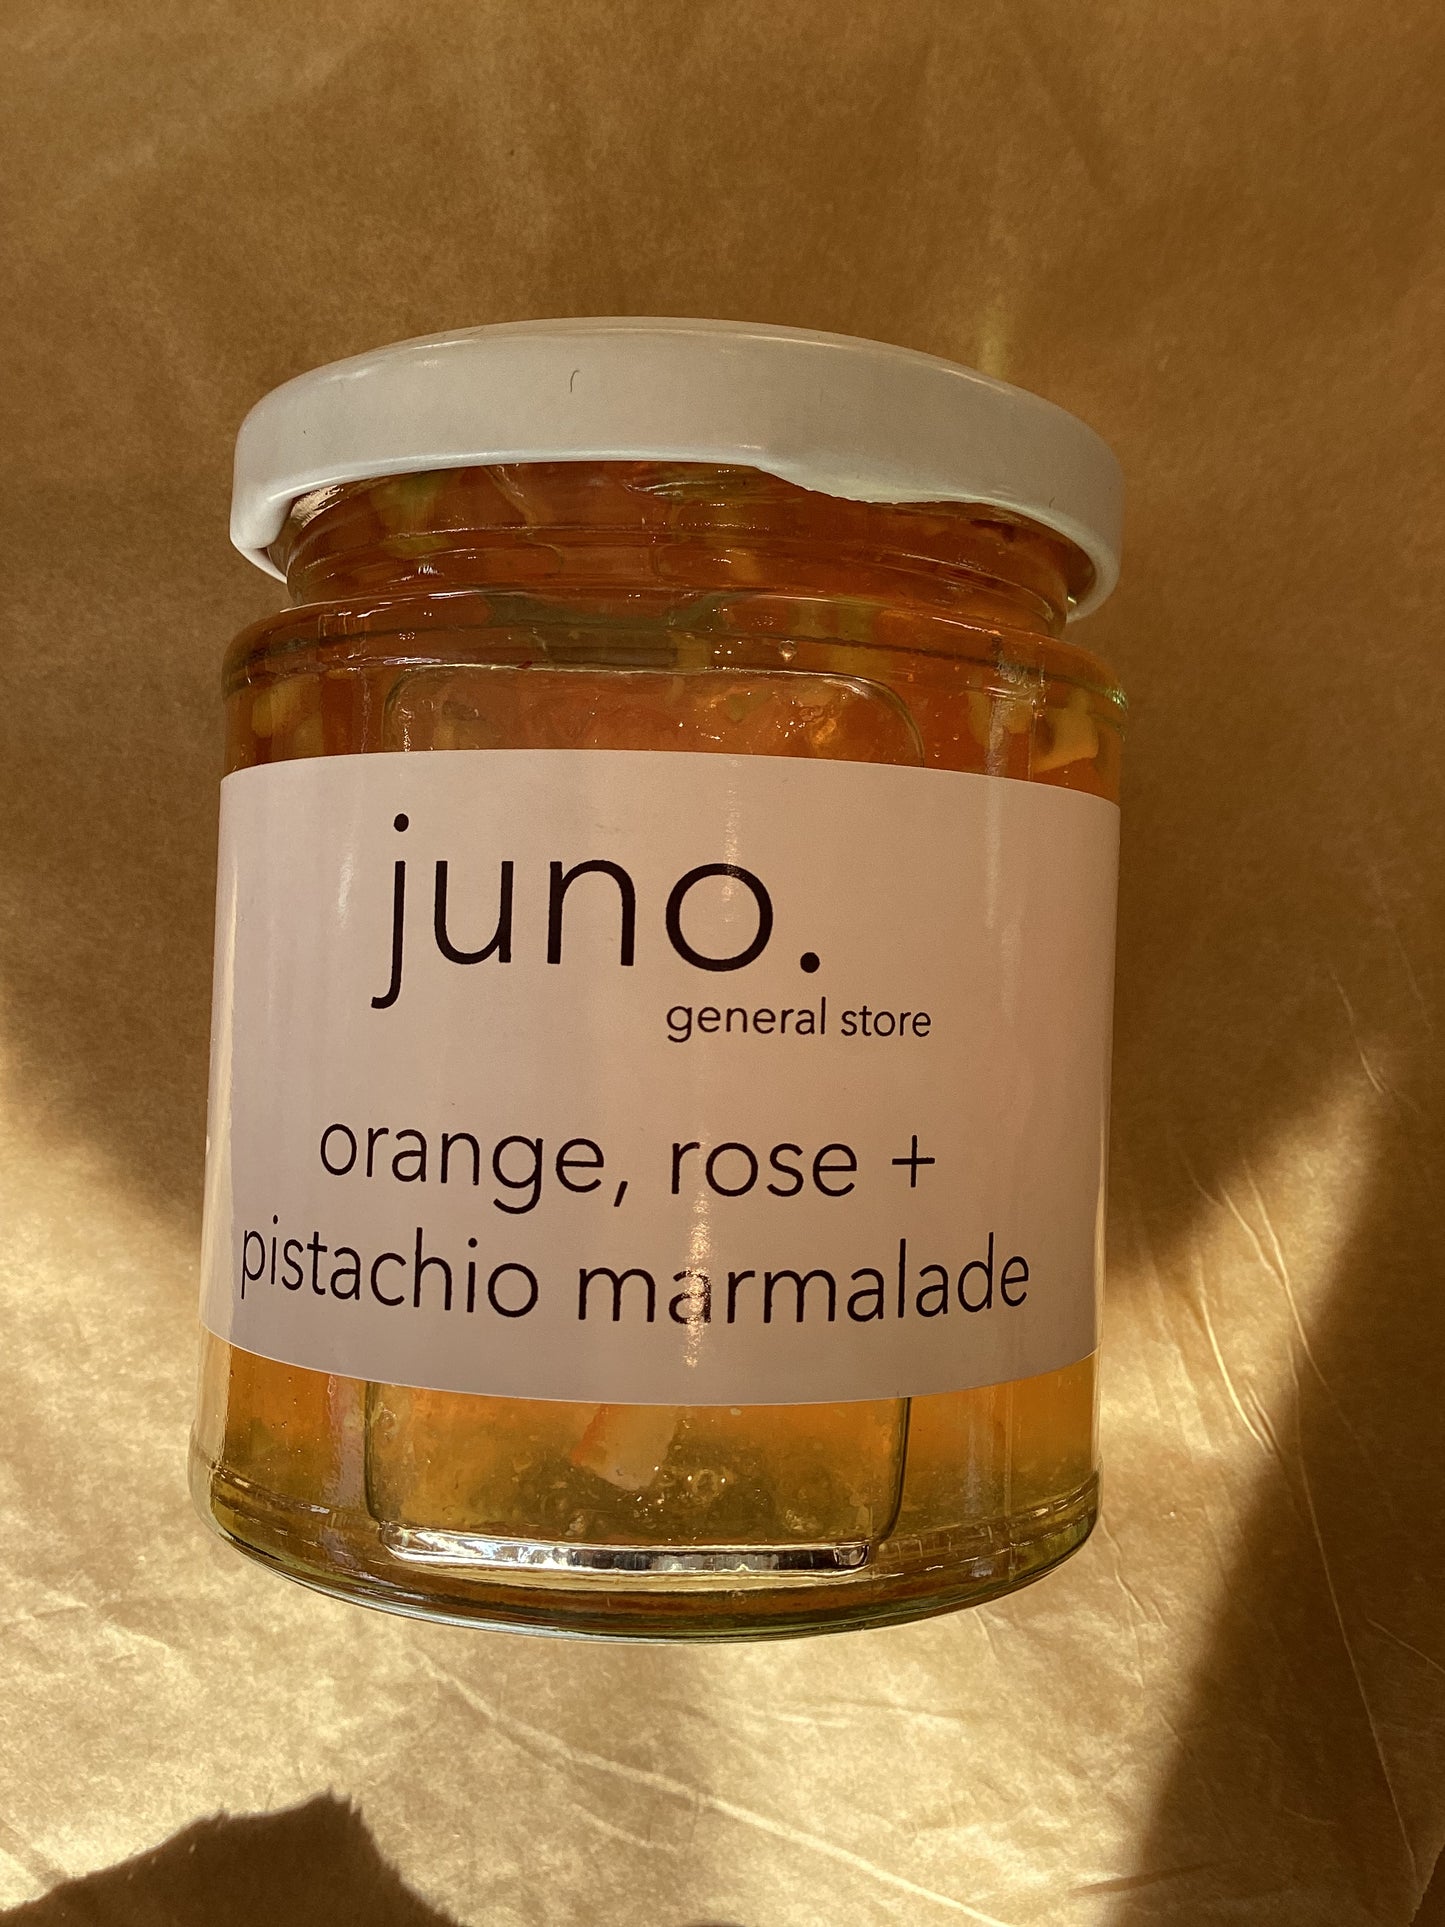 orange, rose + pistachio marmalade